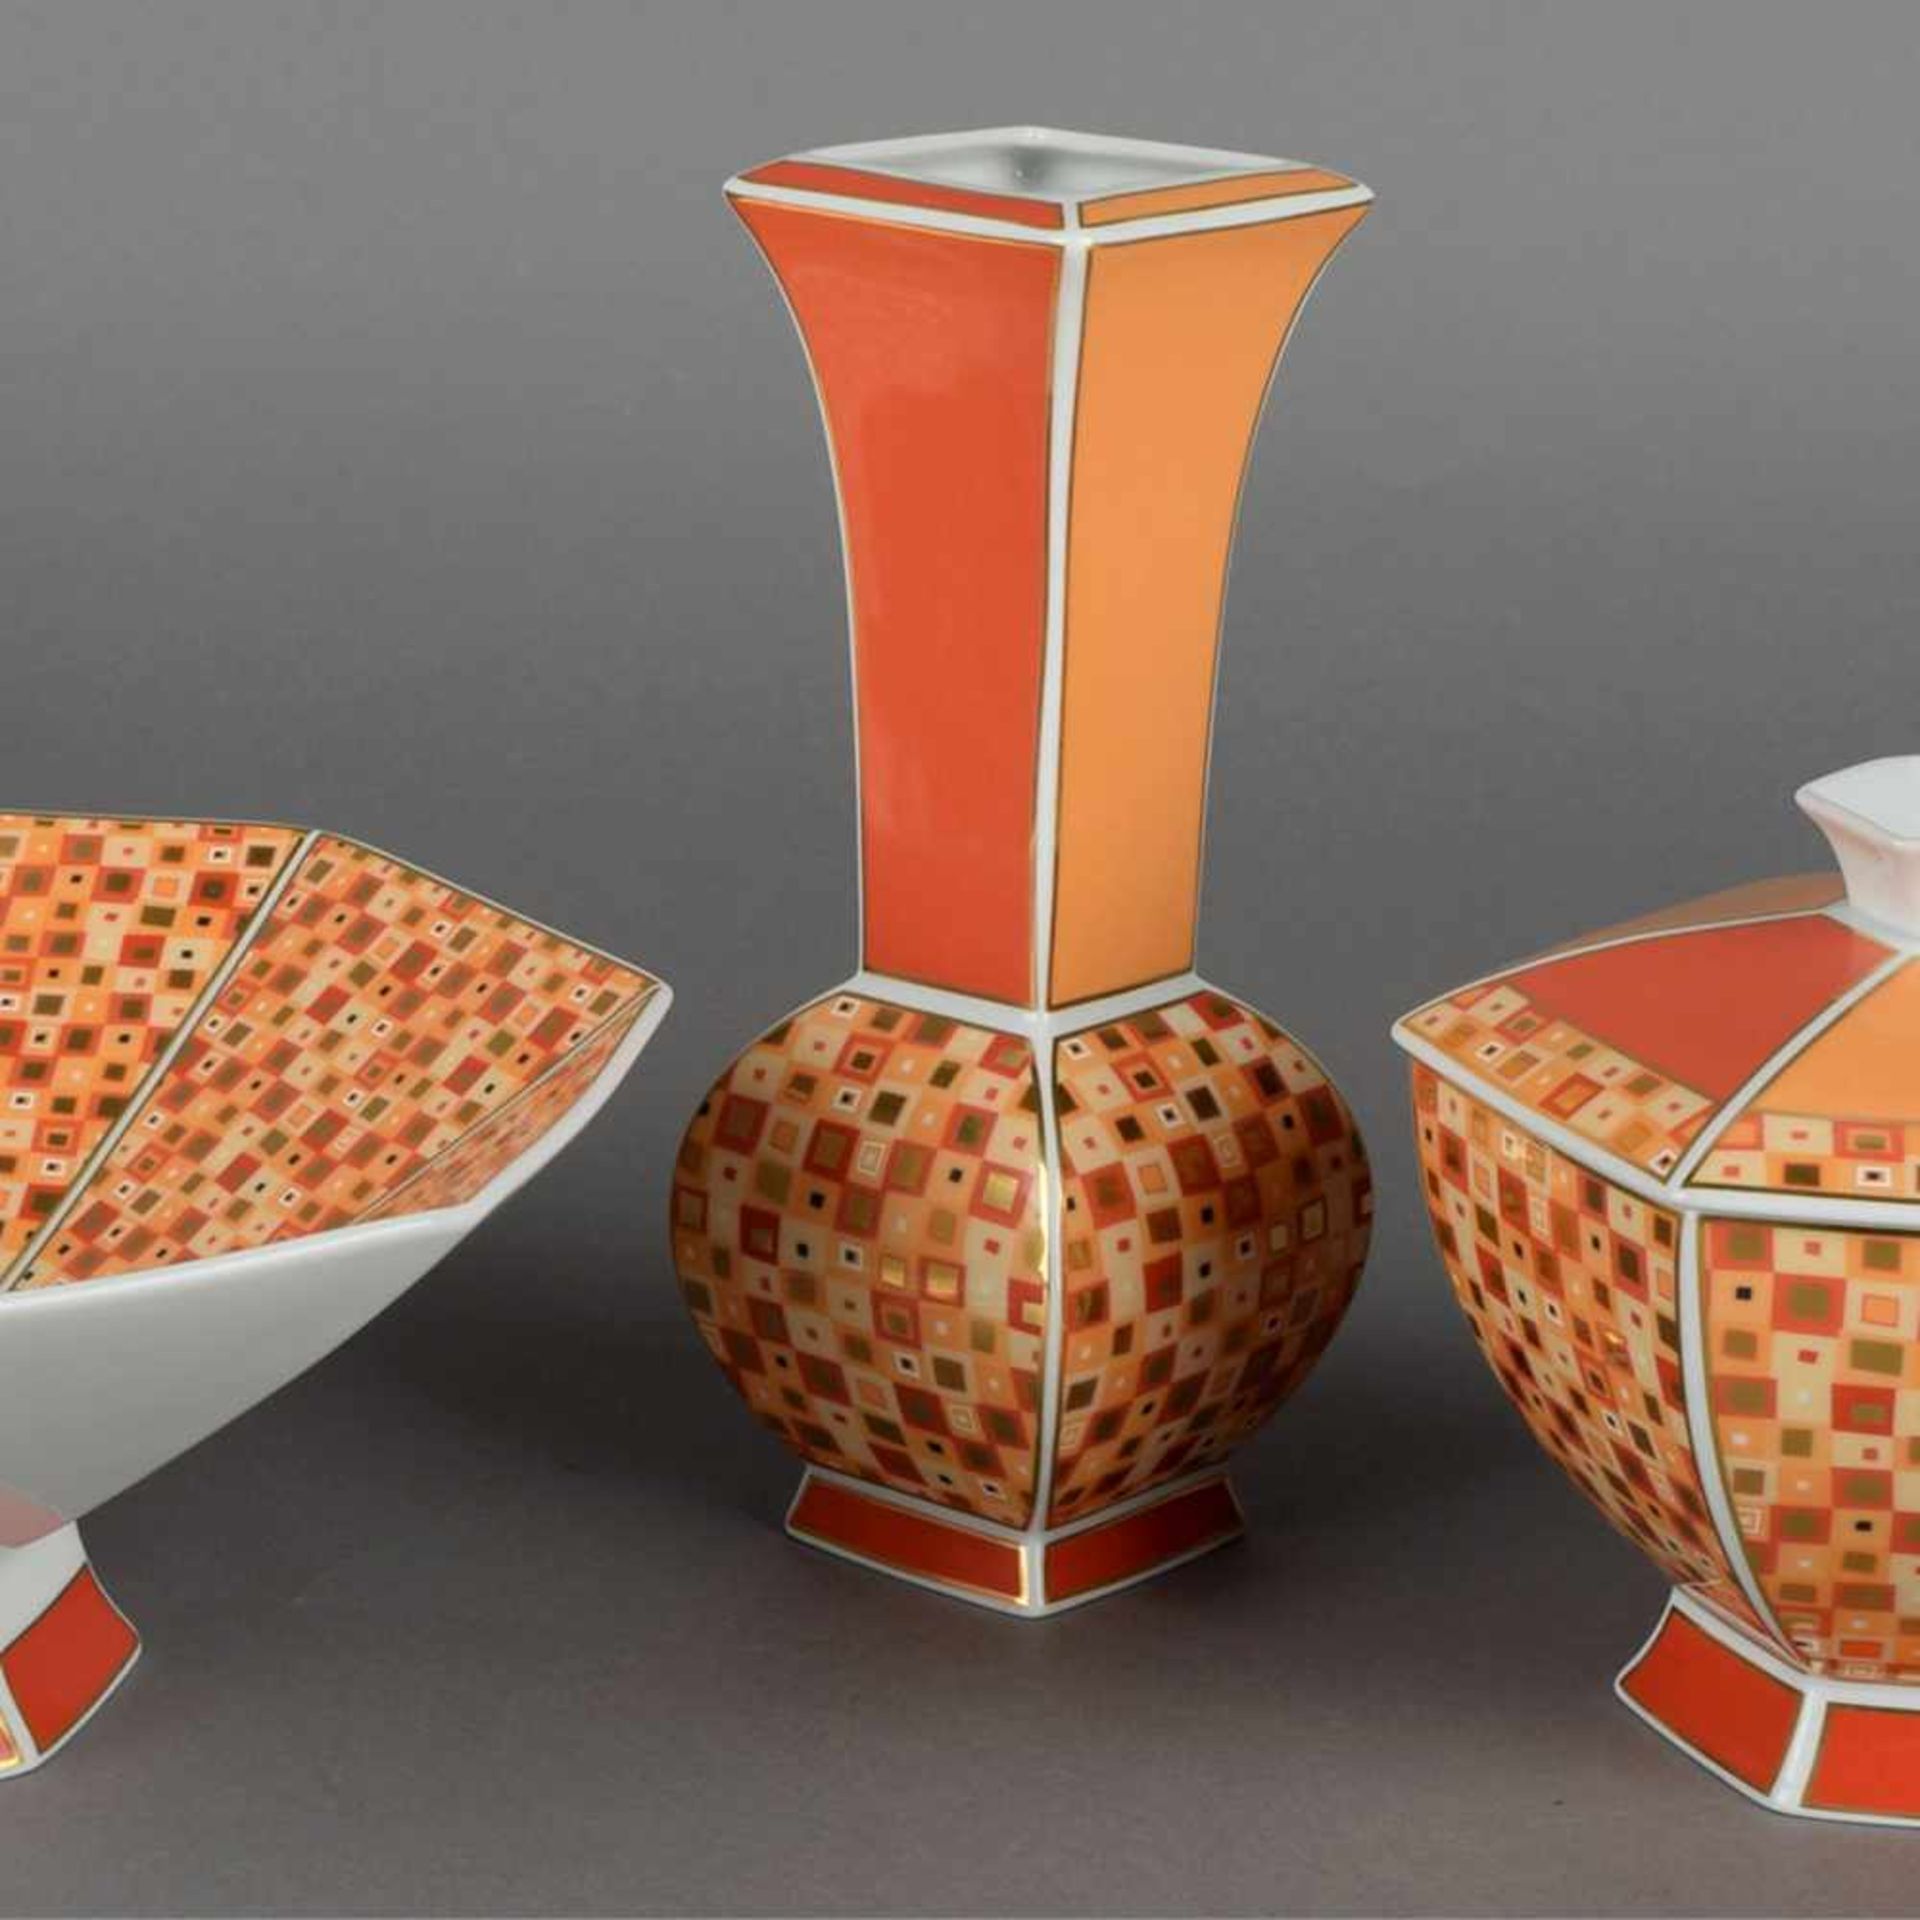 Schale, Vase und Zierdose Hersteller: Kaiser Porzellan, Staffelstein, Dekor "Collage", polygonale